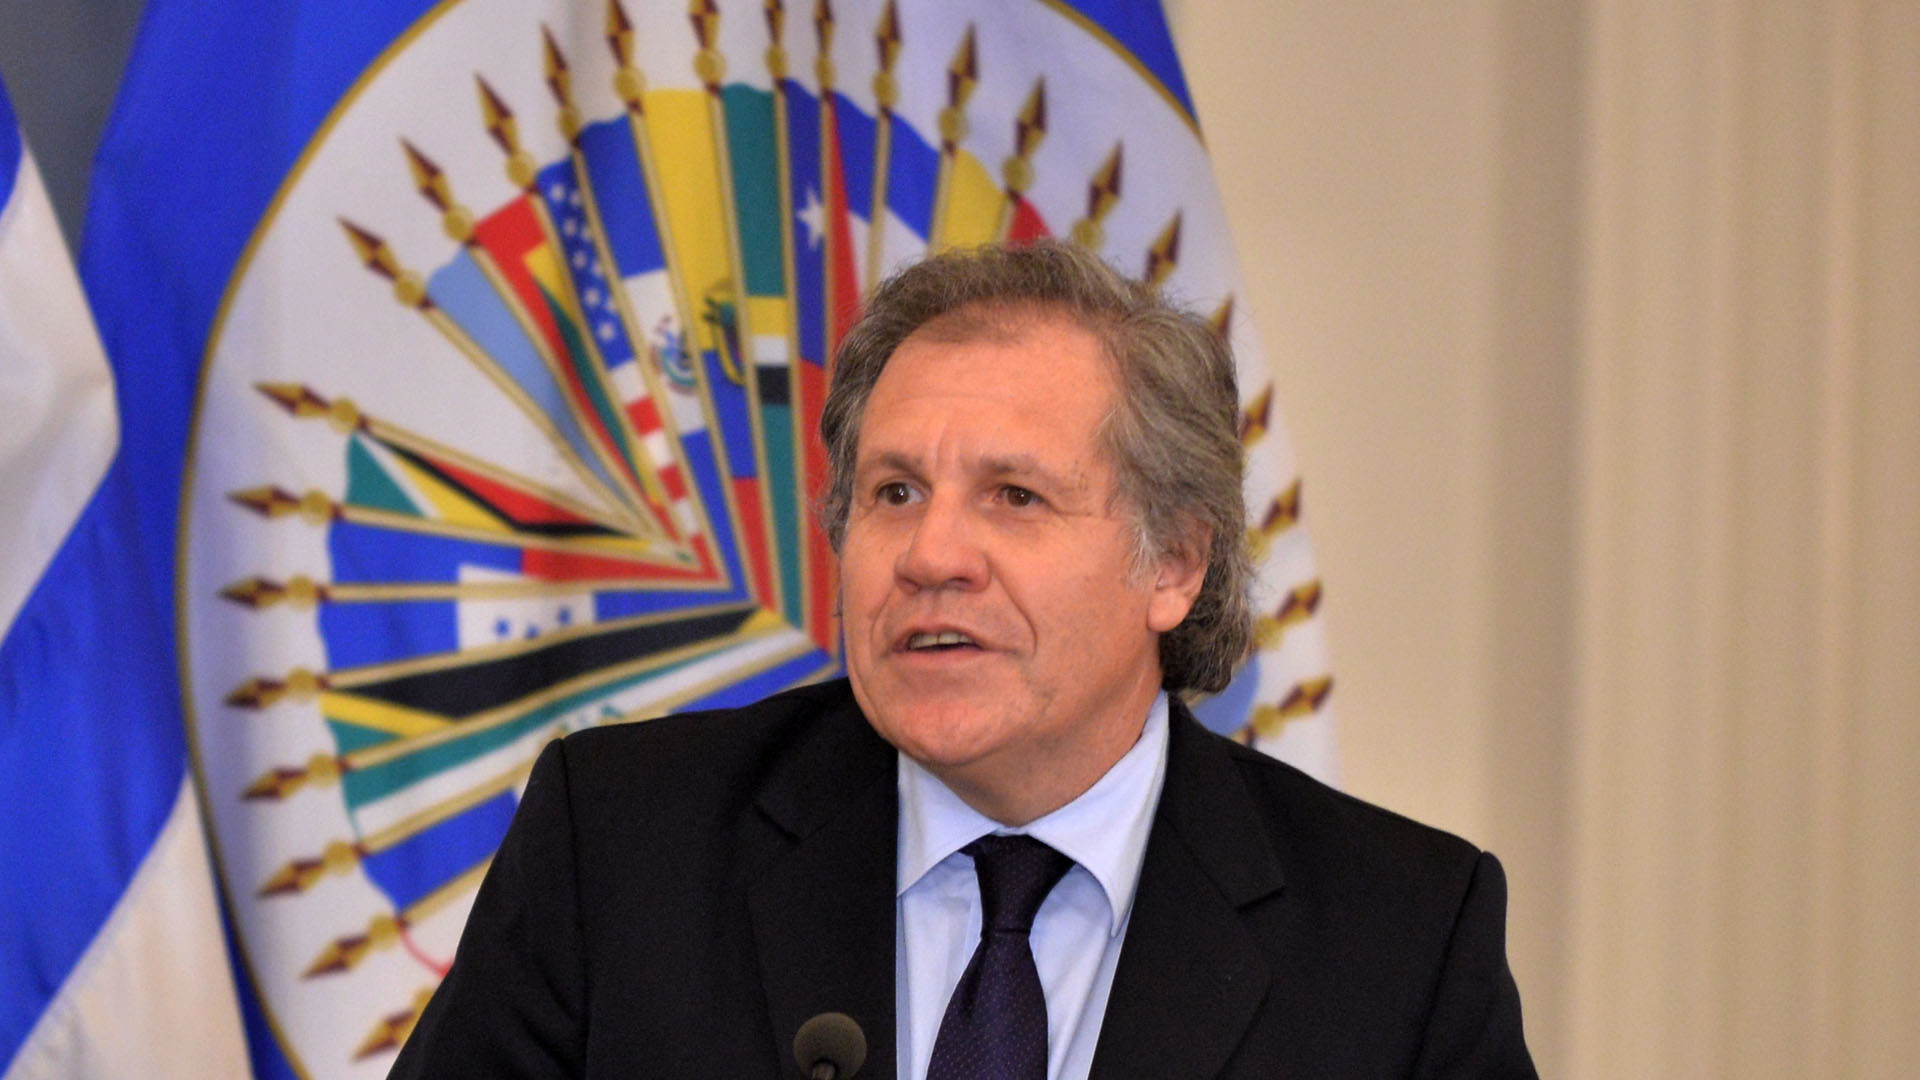 El secretario general de la Organización de Estados Americanos, Luis Almagro, convocó a una reunión para discutir y analizar la situación en el país